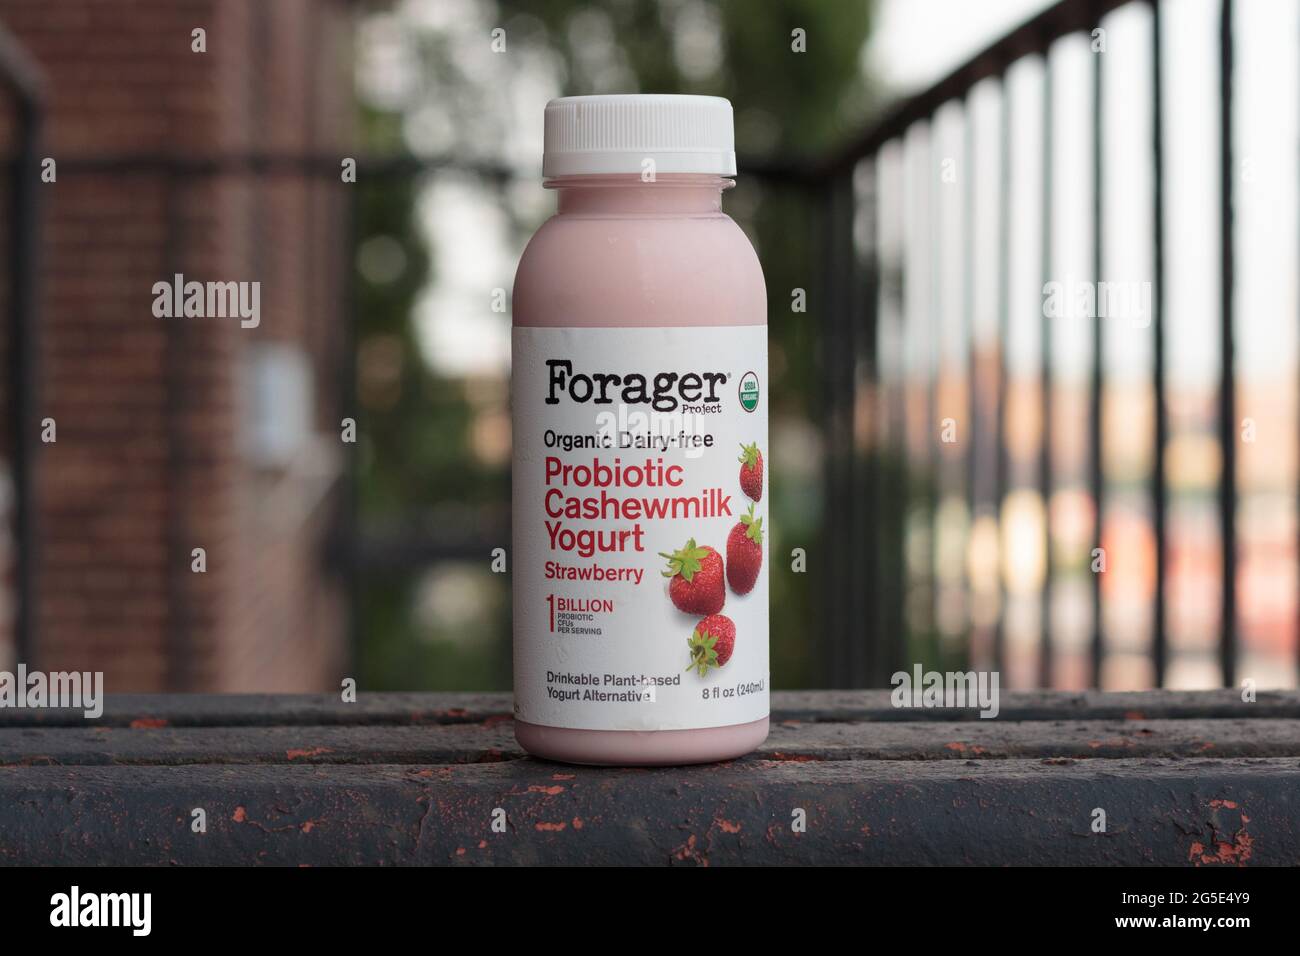 Bouteille de yogourt nature probiotique au lait de cashewlaitable aromatisé aux fraises, par la marque Forager Project, en fuite de feu Banque D'Images